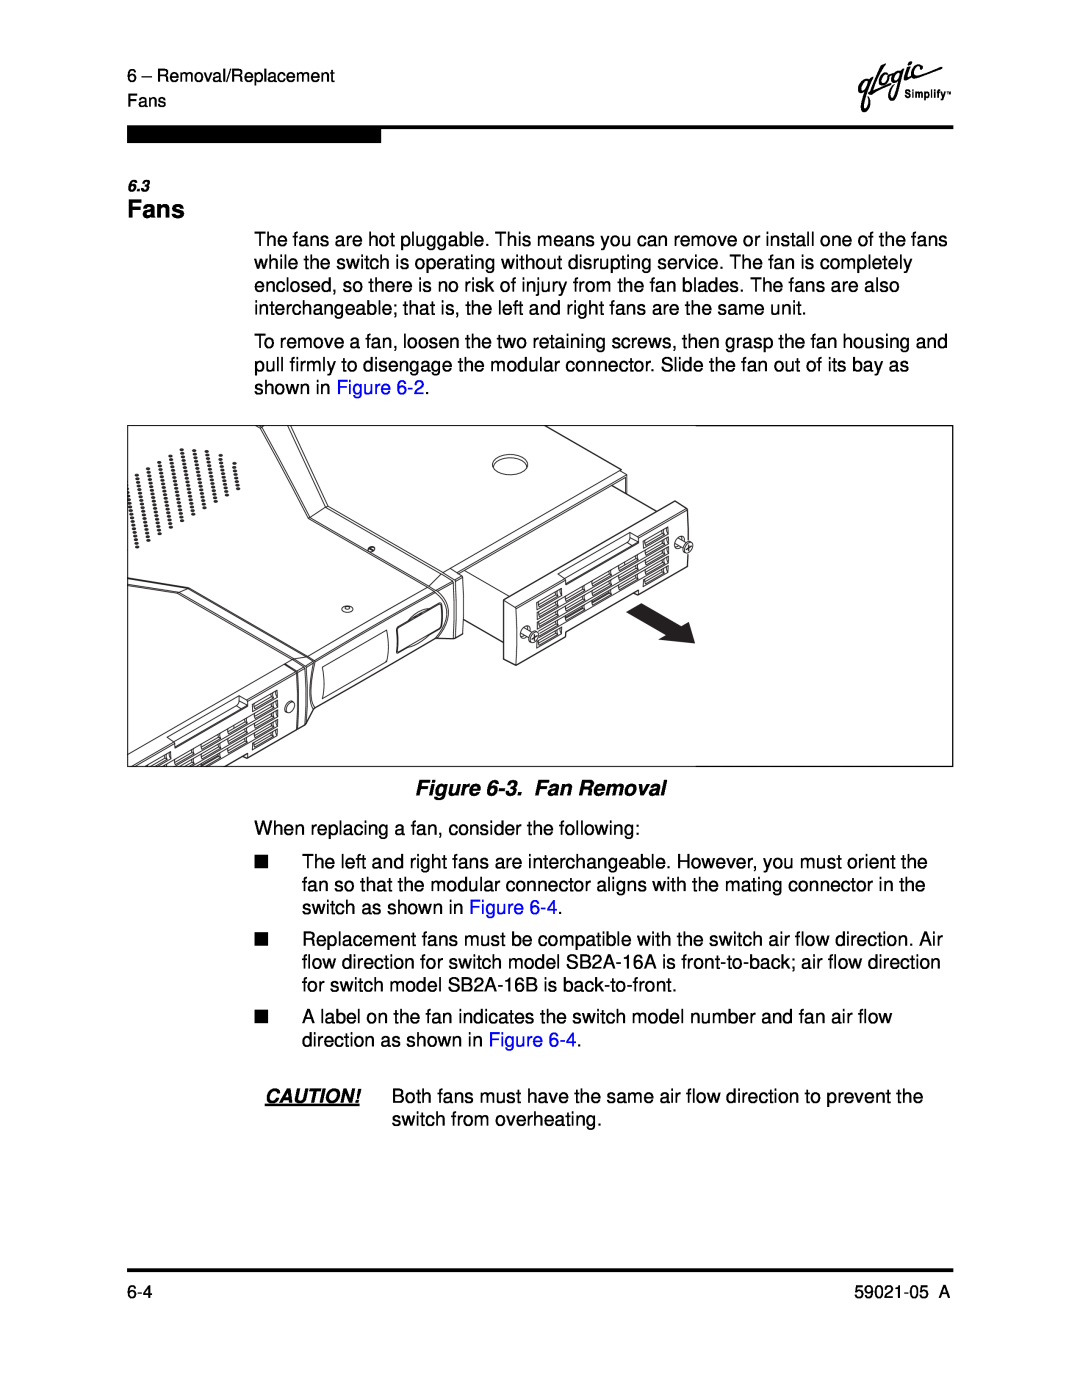 Q-Logic 59021-05 manual 3. Fan Removal, Fans 